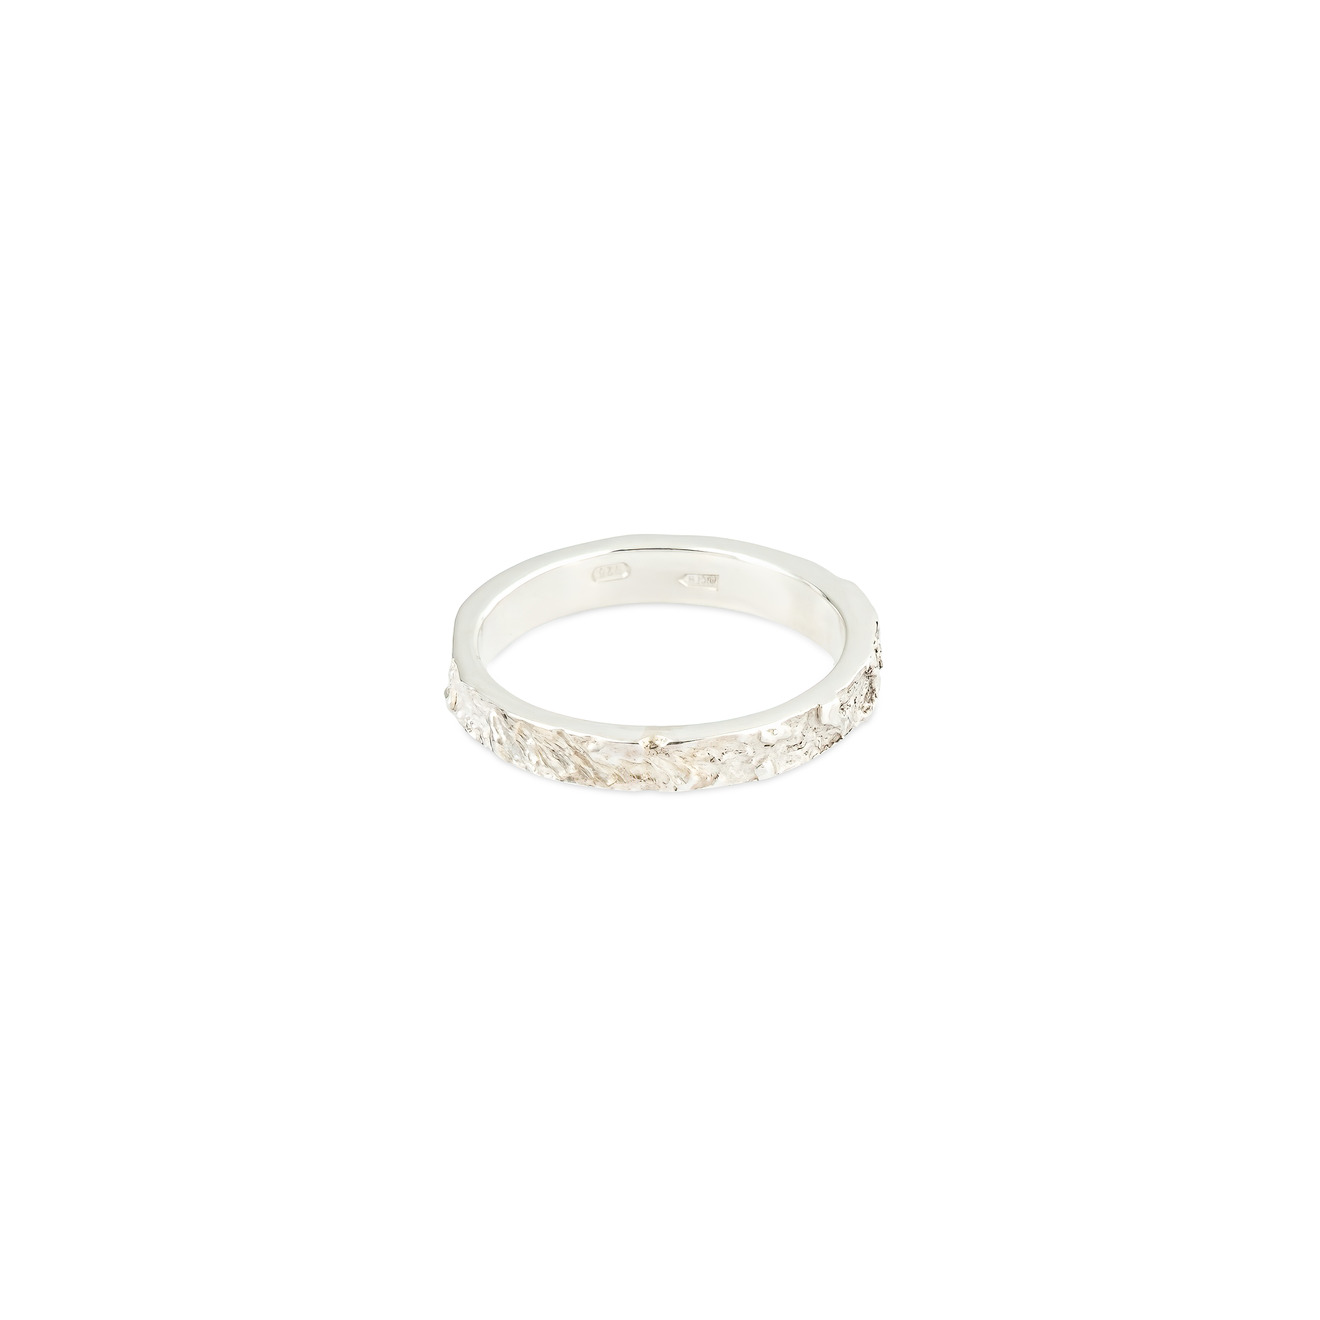 ура jewelry кольцо из серебра с жемчугом УРА jewelry Фактурное кольцо из серебра